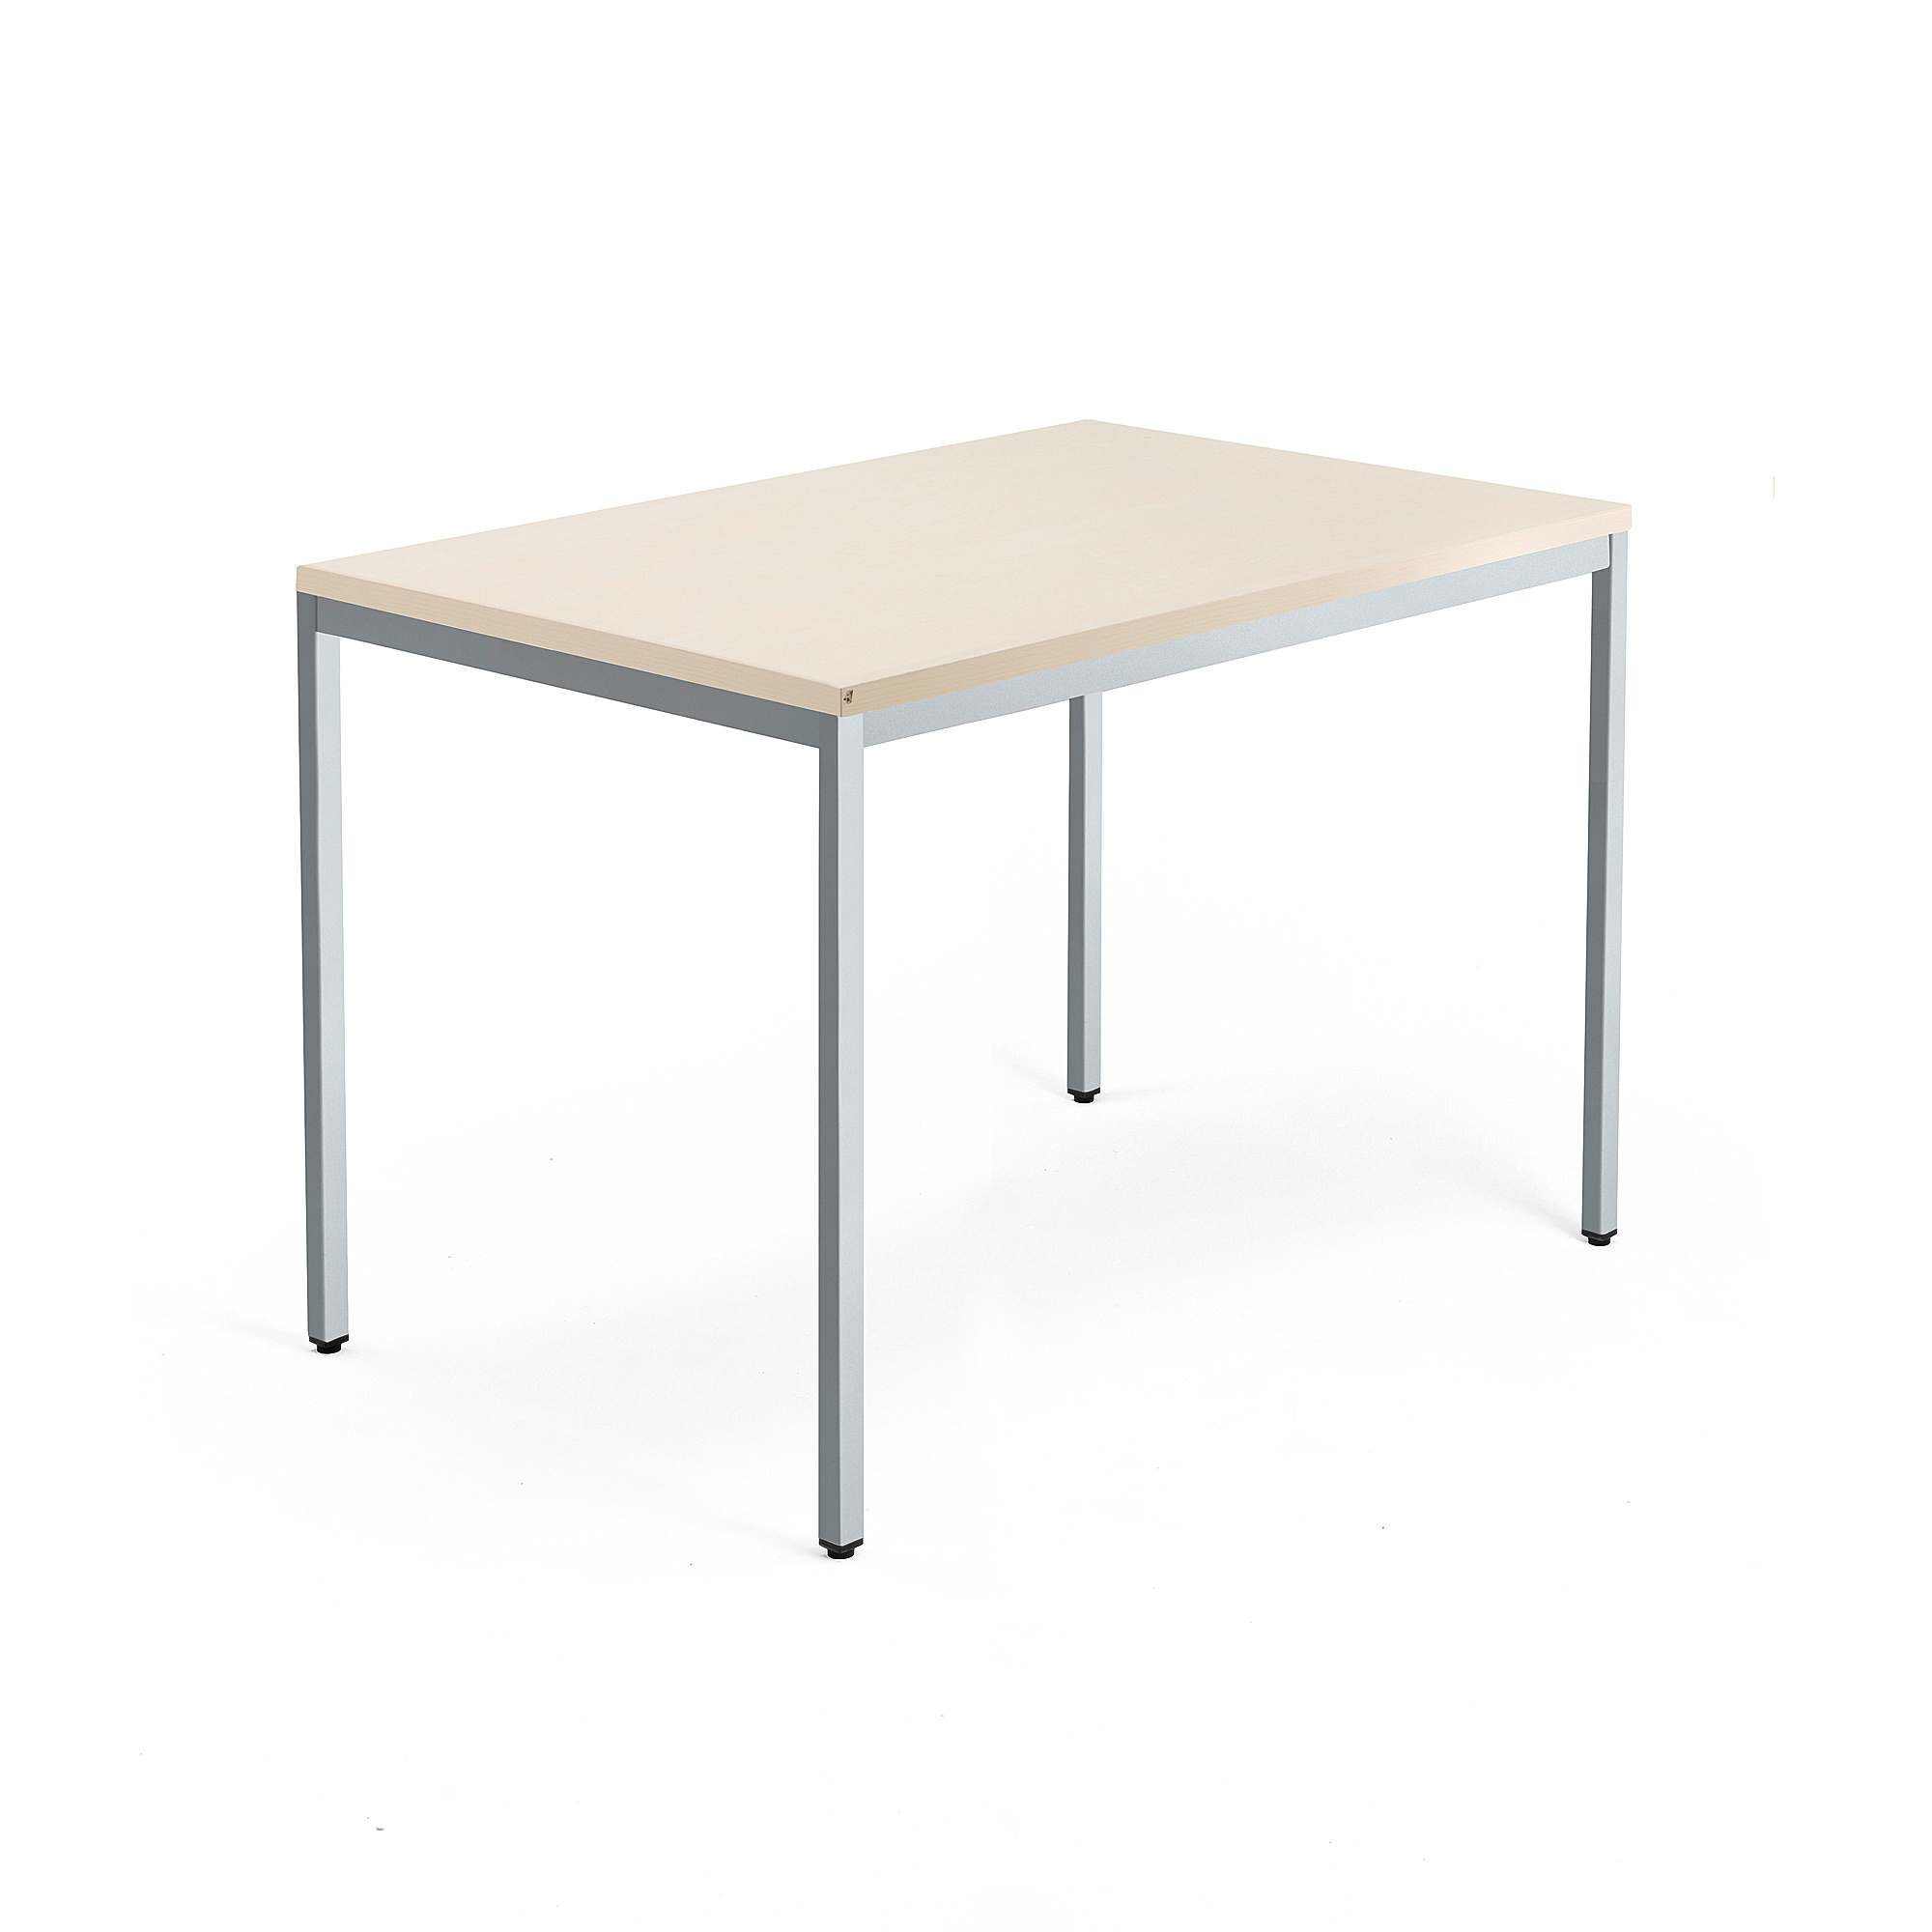 Psací stůl QBUS, 4 nohy, 1200x800 mm, stříbrný rám, bříza